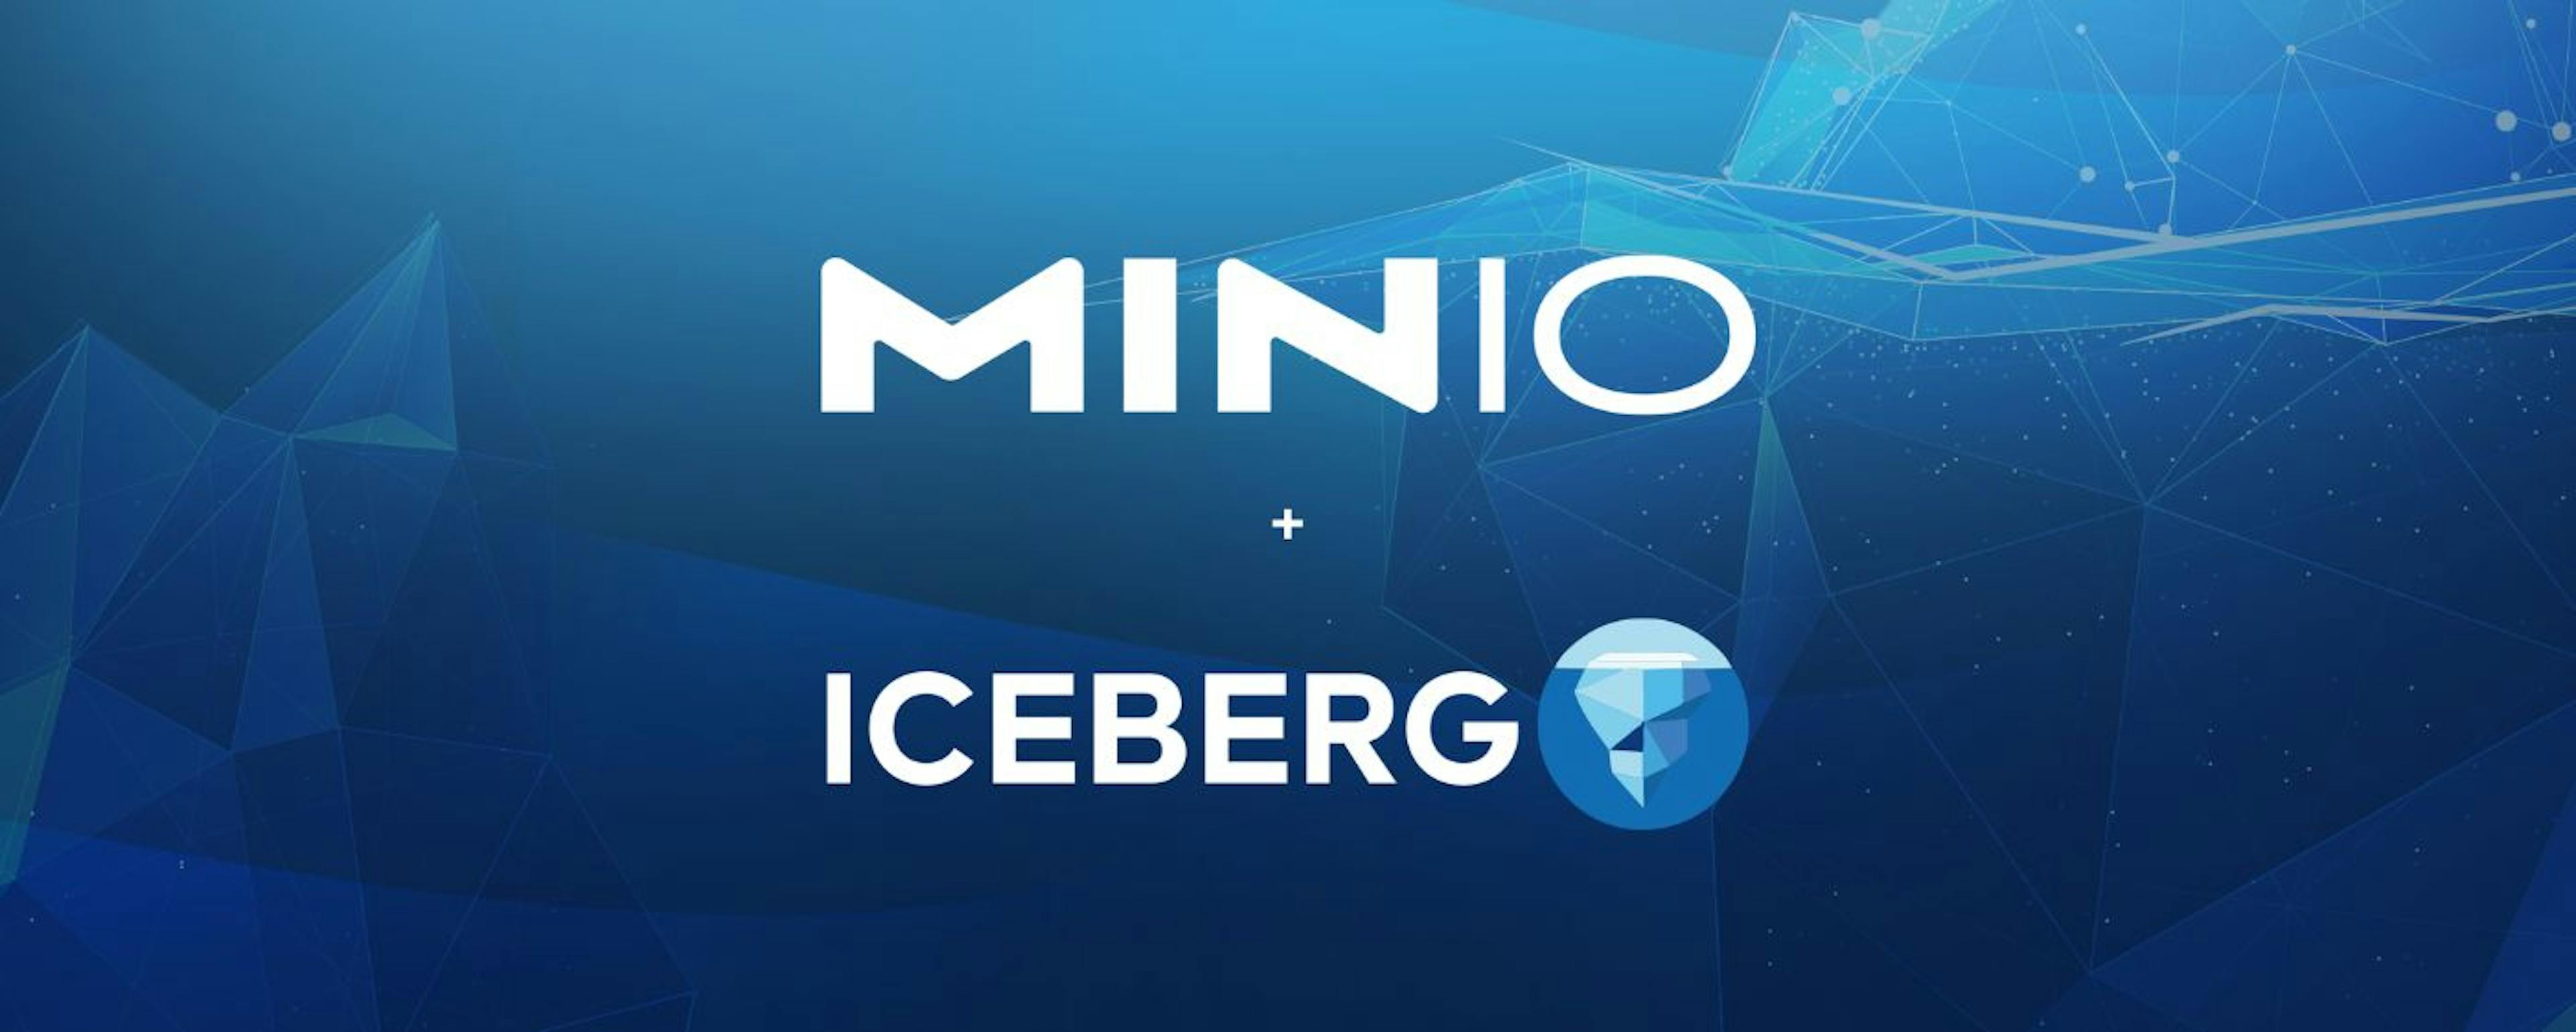 featured image - Iceberg と MinIO を使用したレイクハウス アーキテクチャの決定版ガイド